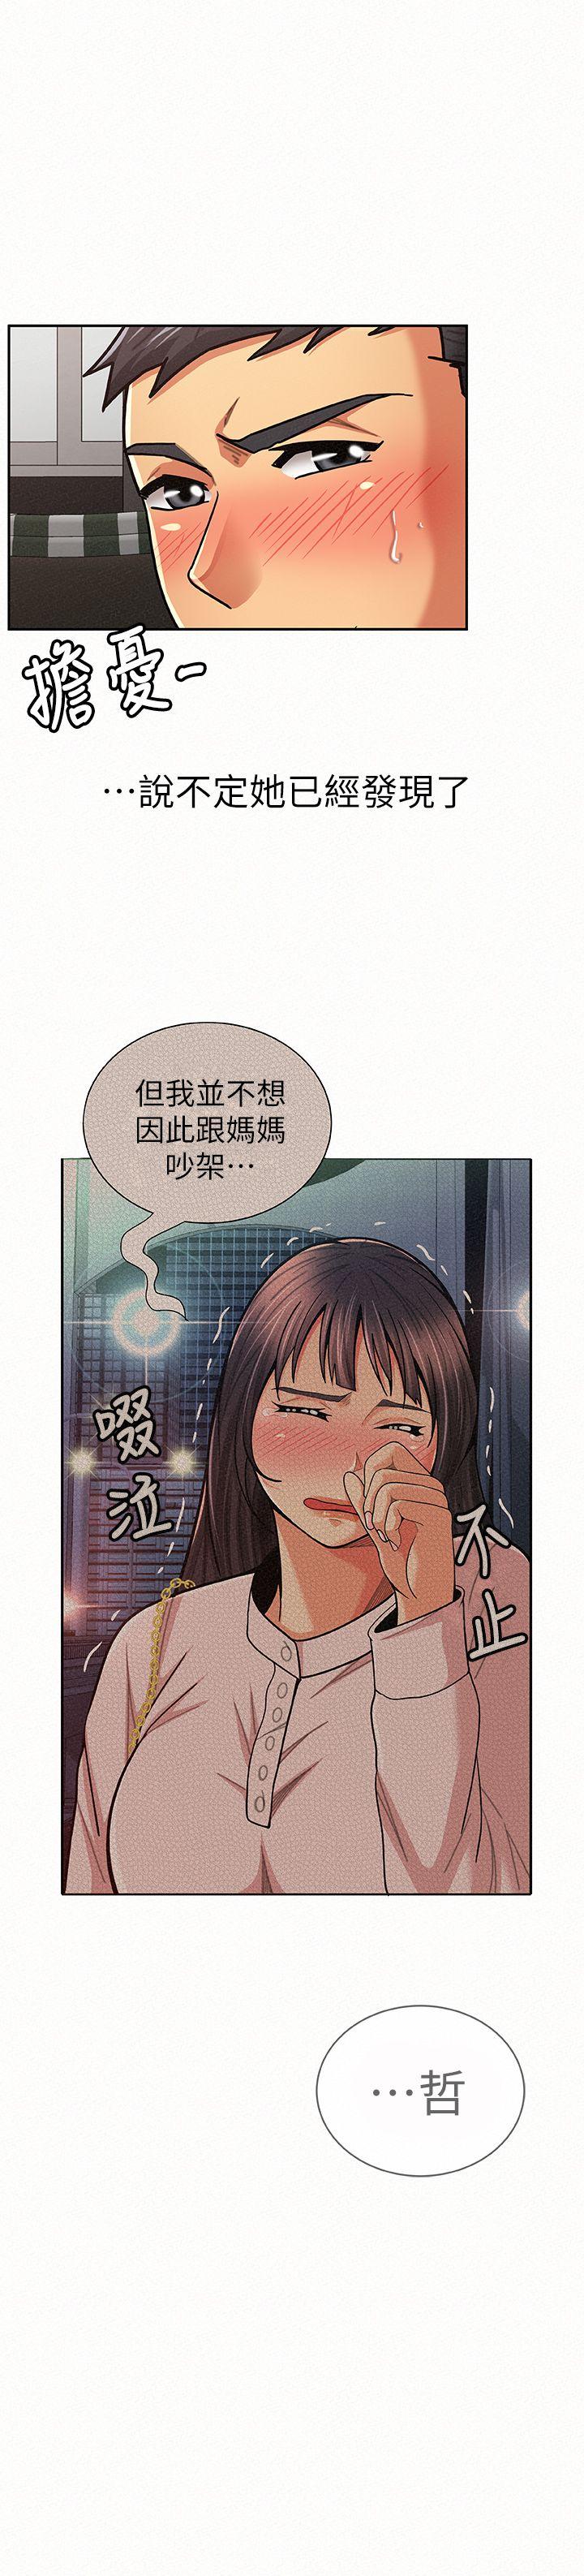 韩国污漫画 報告夫人 第20话-你跟仁惠进展到哪里了? 21